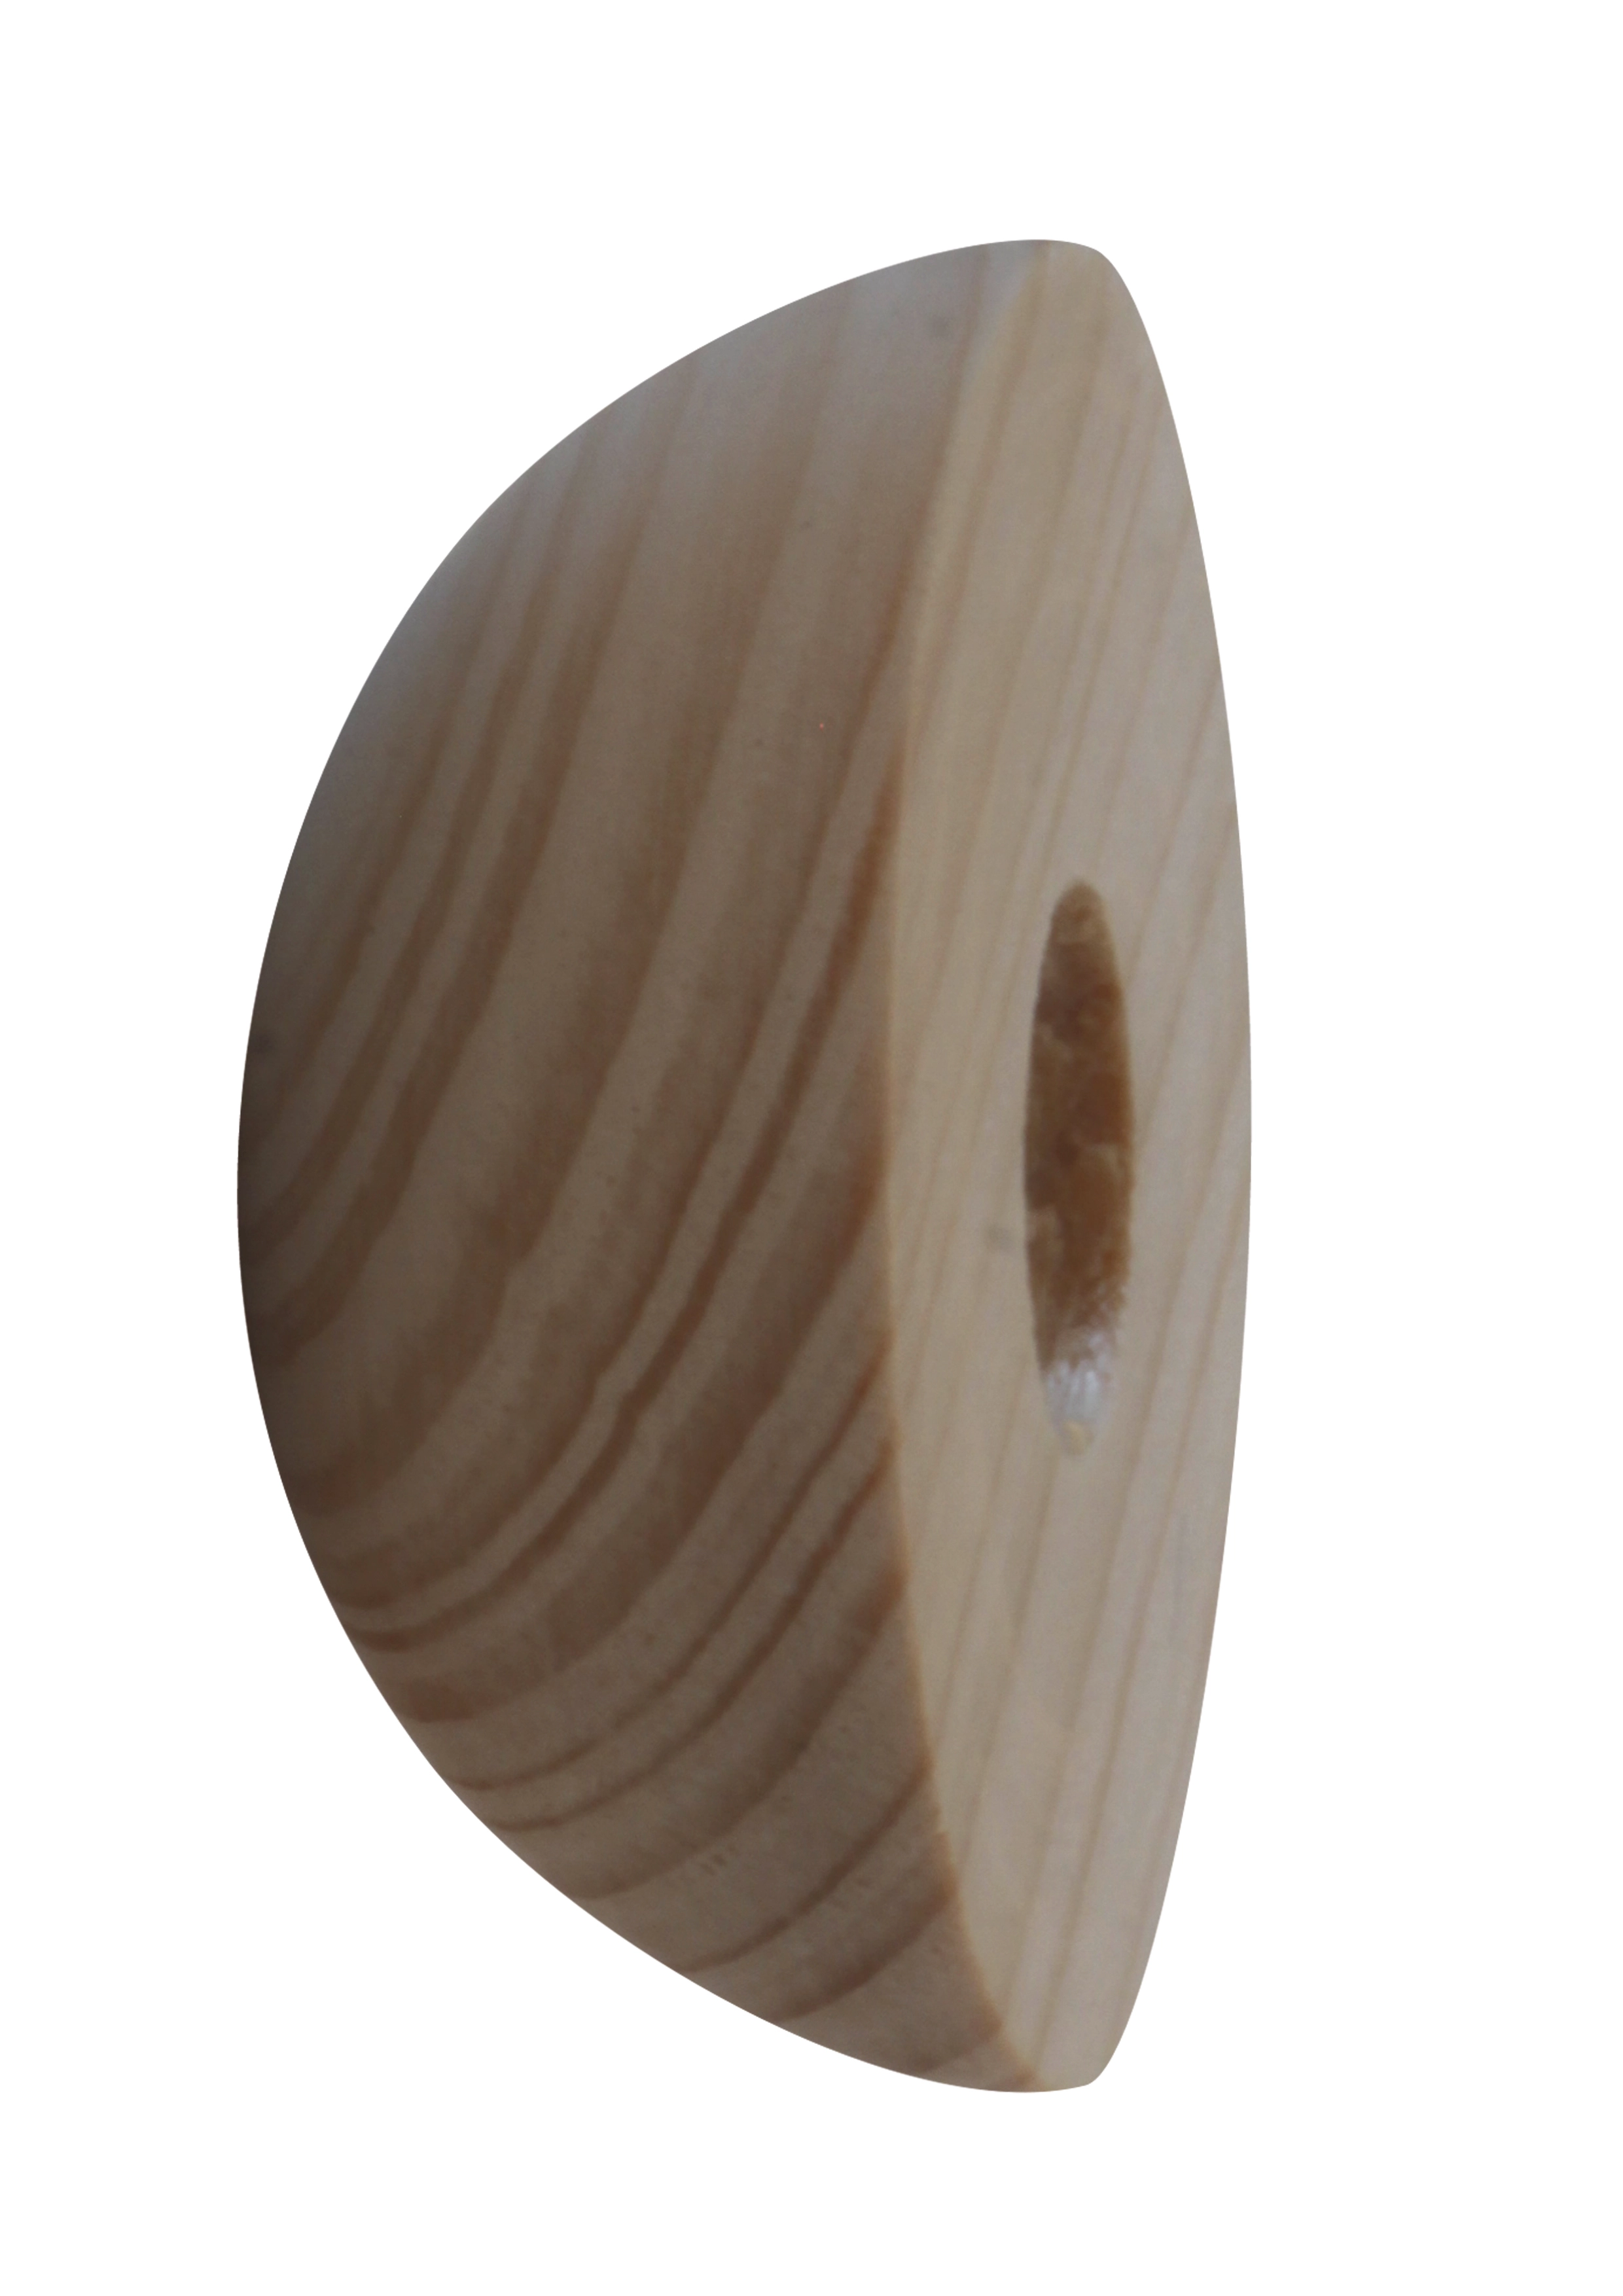 Holzdübel, 10 mm, für Holzhandlauf